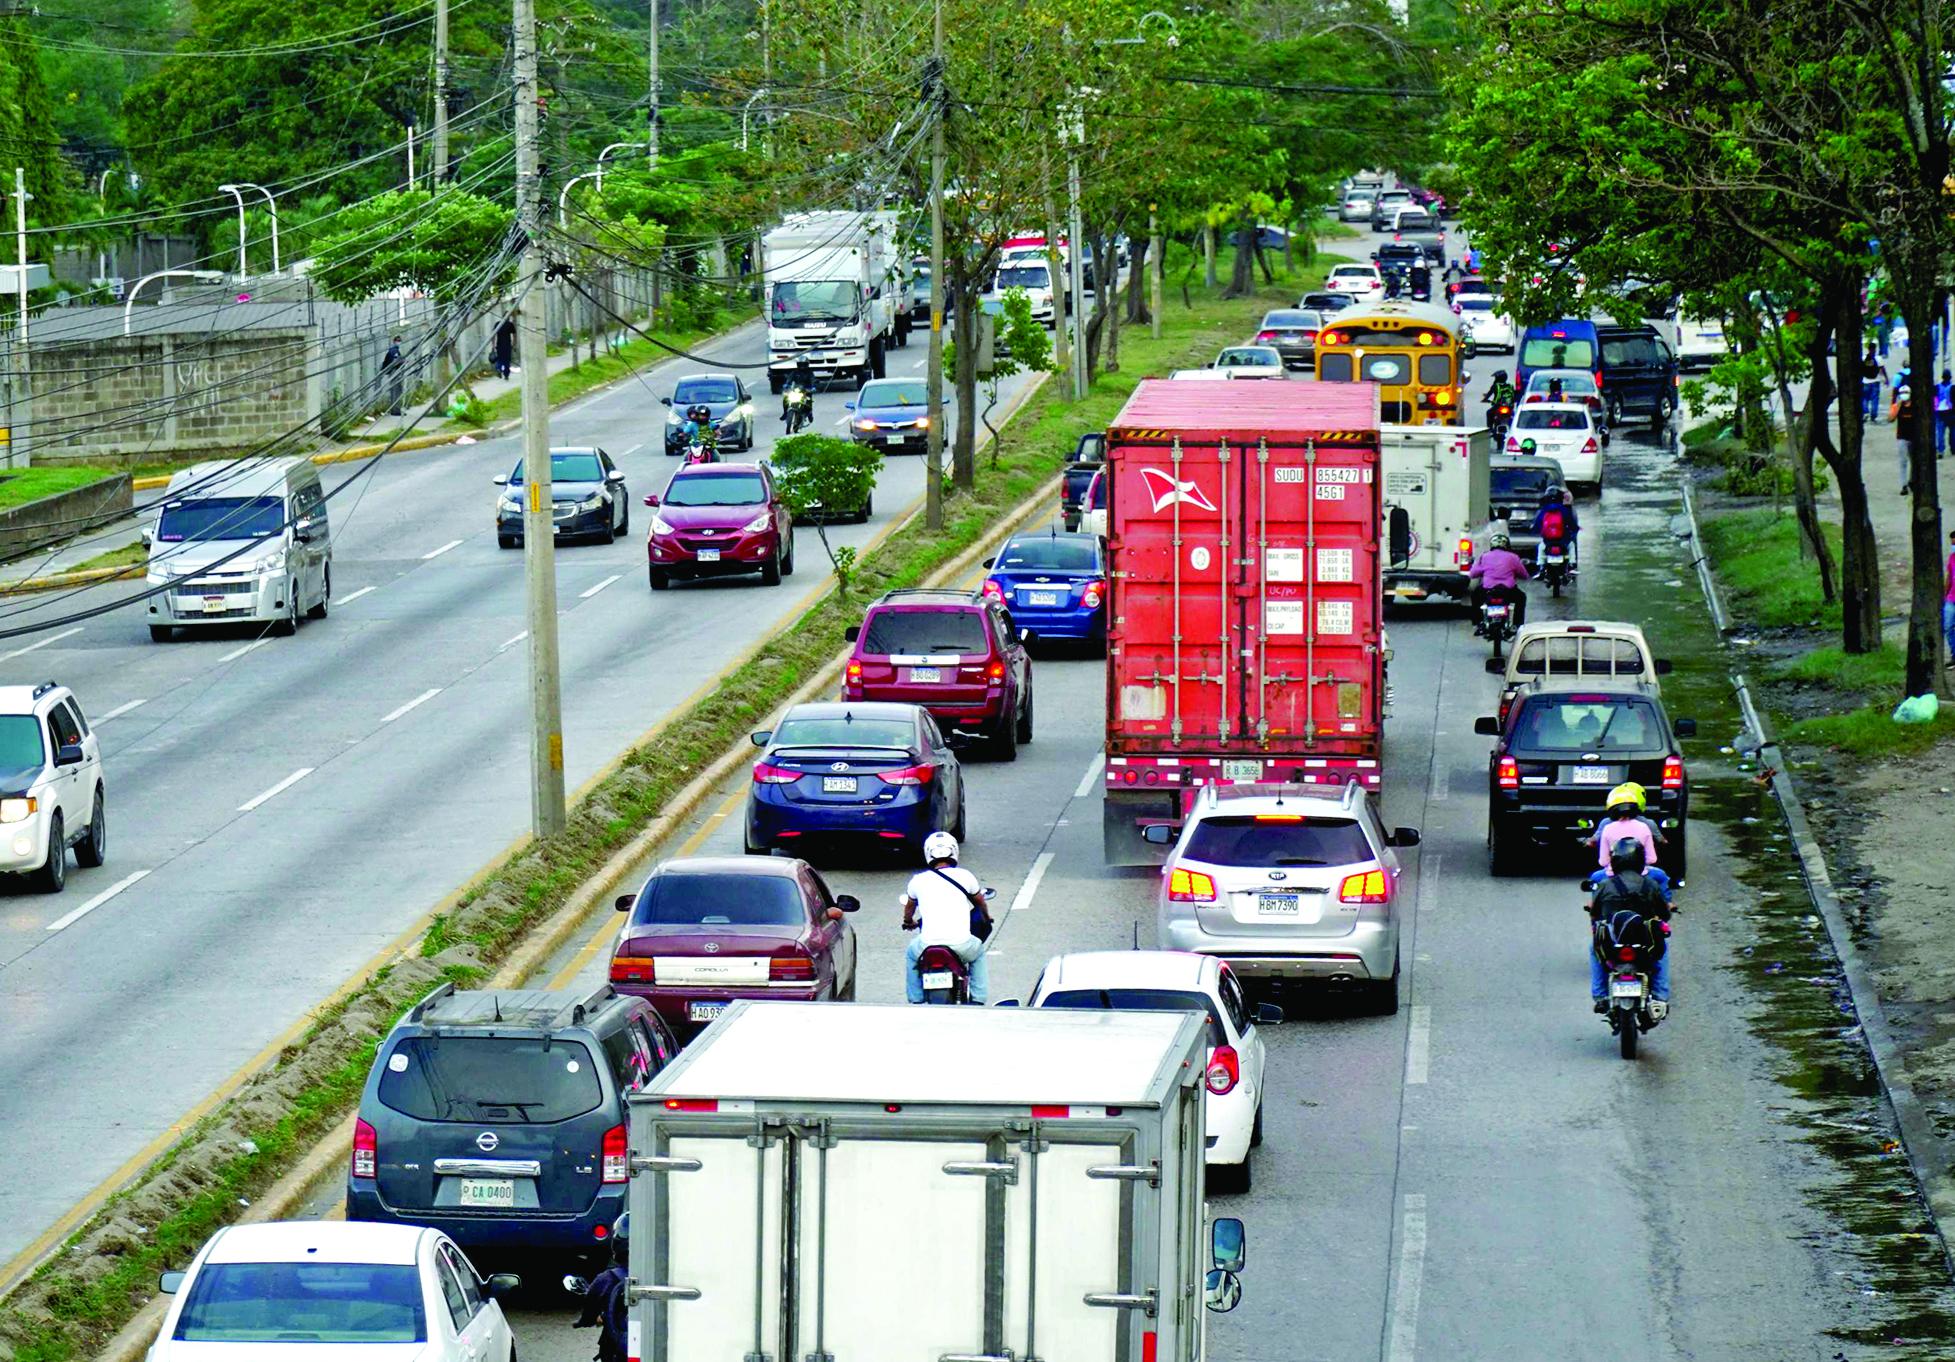 Esta es la realidad que miles de conductores viven a diario en el bulevar del sur. La propuesta que lleva años es un verdadero libramiento del tráfico pesado dentro de la ciudad. Foto Amílcar Izaguirre.